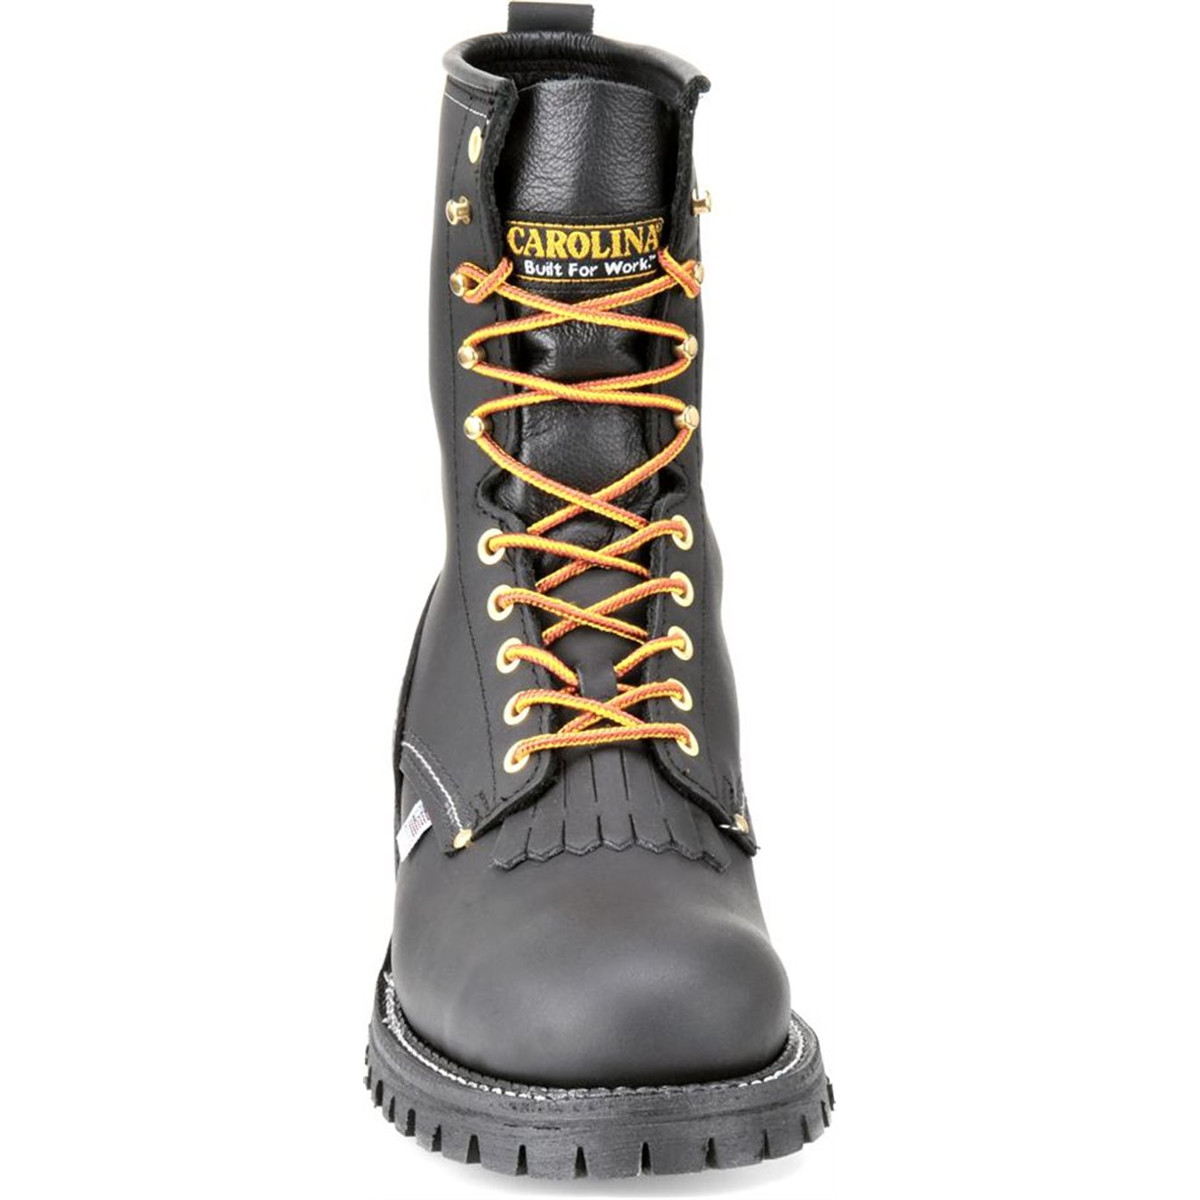 narrow steel toe boots